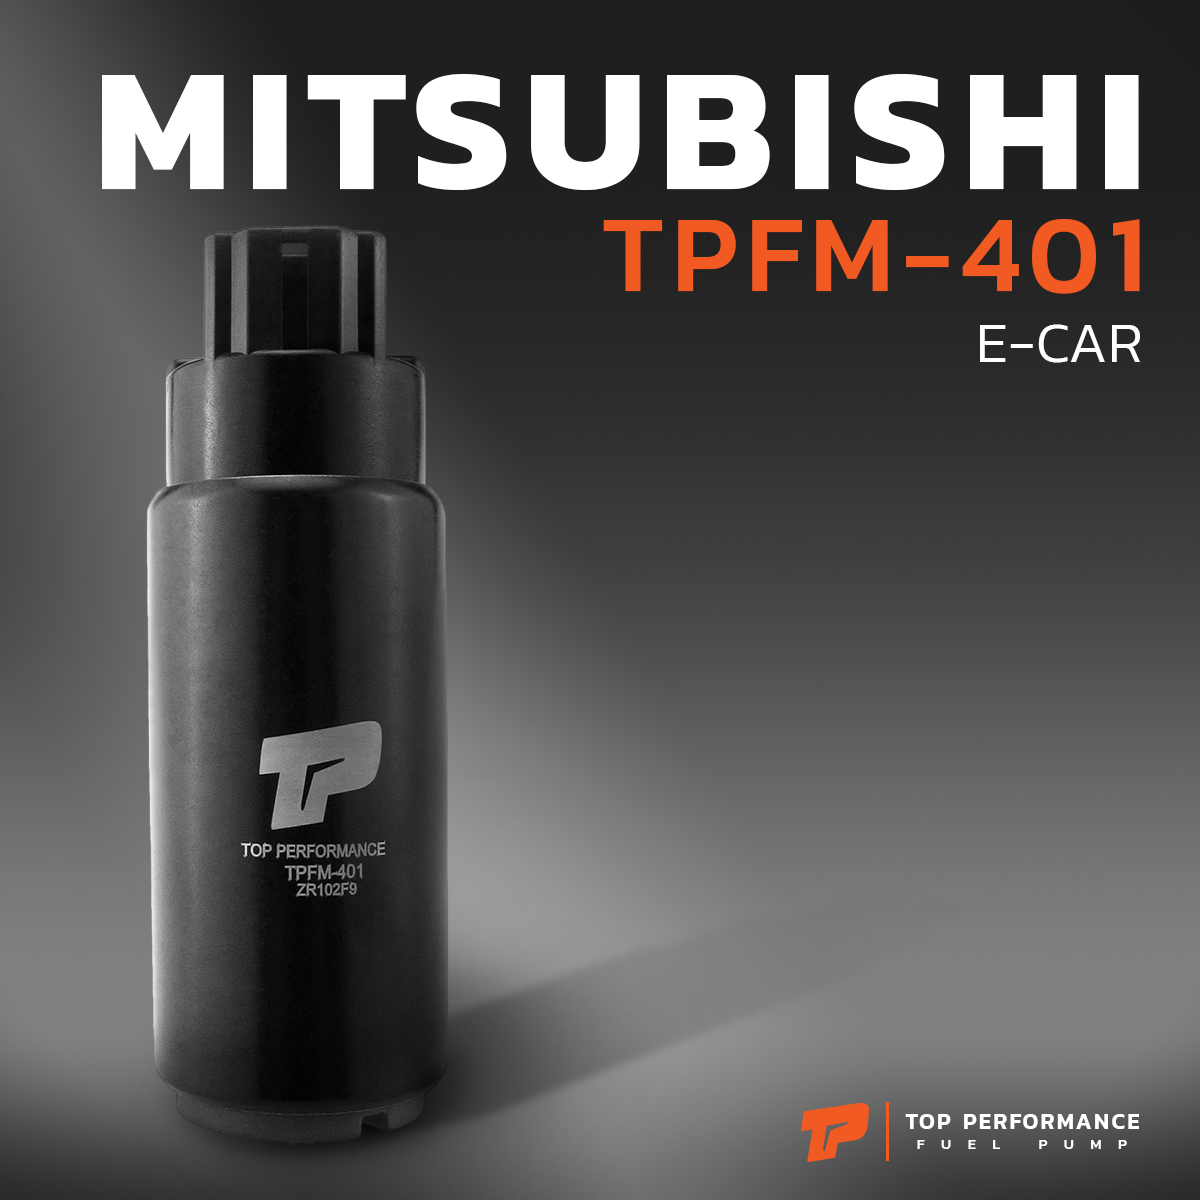 มอเตอร์ ปั๊มติ๊ก MITSUBISHI E-CAR / CK2 / NISSAN B13 / ปลั๊กใหญ่ - TOP PERFORMANCE JAPAN - TPFM-401 - ปั้มติ๊ก ปั๊มน้ำมัน อีคาร์